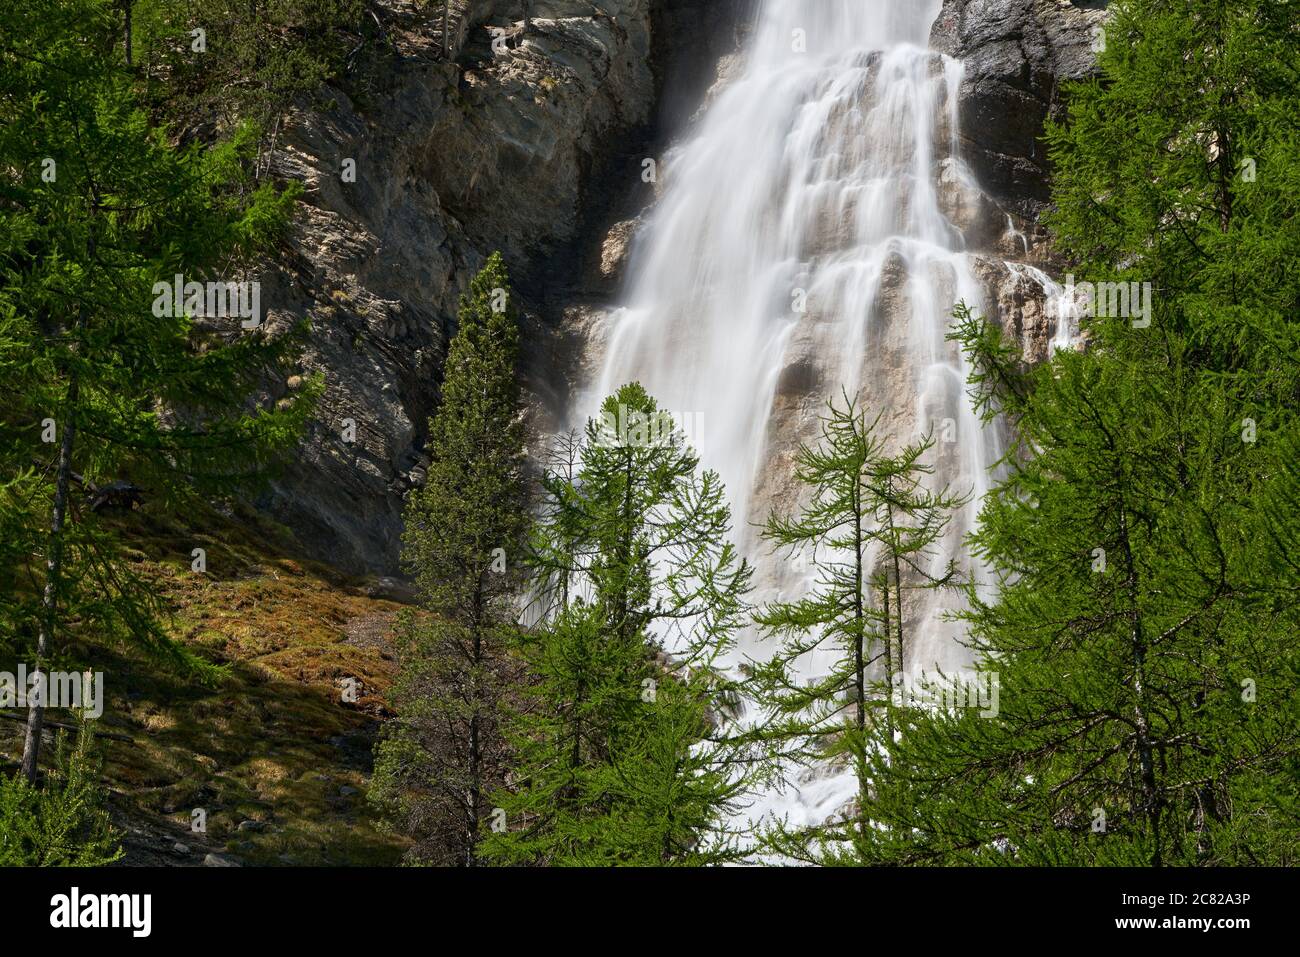 Cascade de la Pisse en été dans le parc naturel régional de Queyras. Ceillac, Hautes-Alpes, Alpes, France Banque D'Images